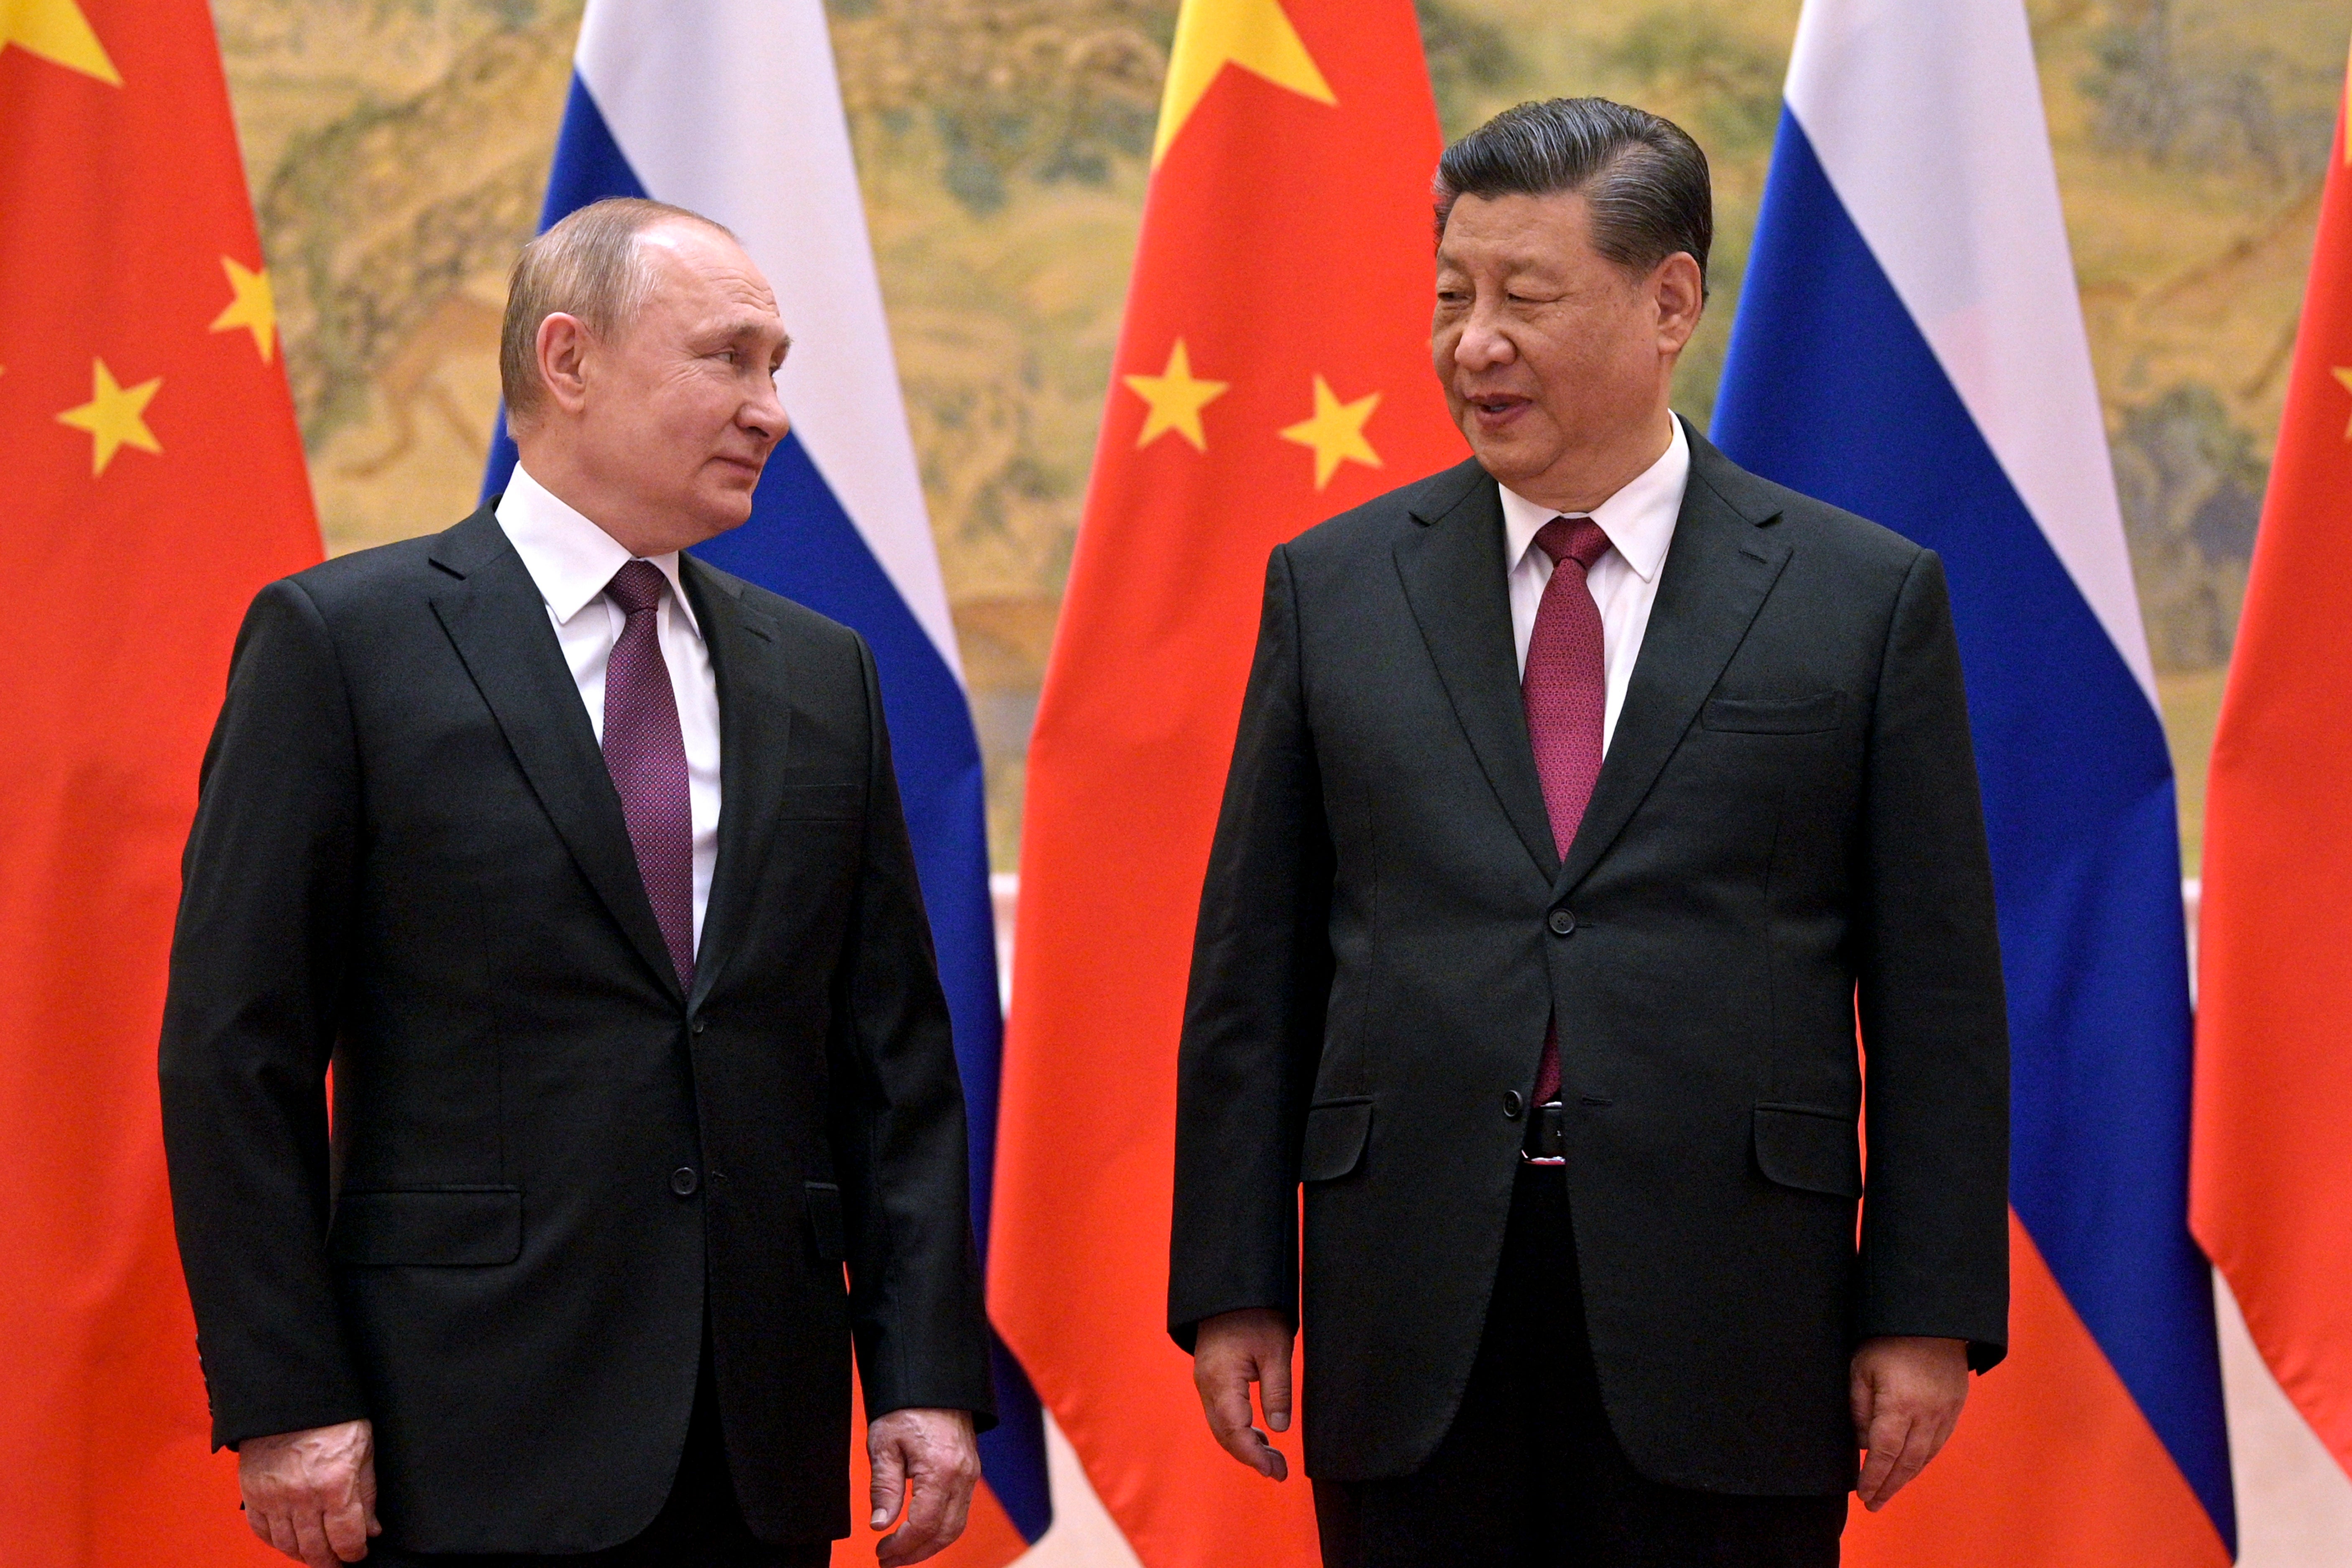 President Xi Jinping met his Russian counterpart Vladimir Putin in Beijing earlier this month